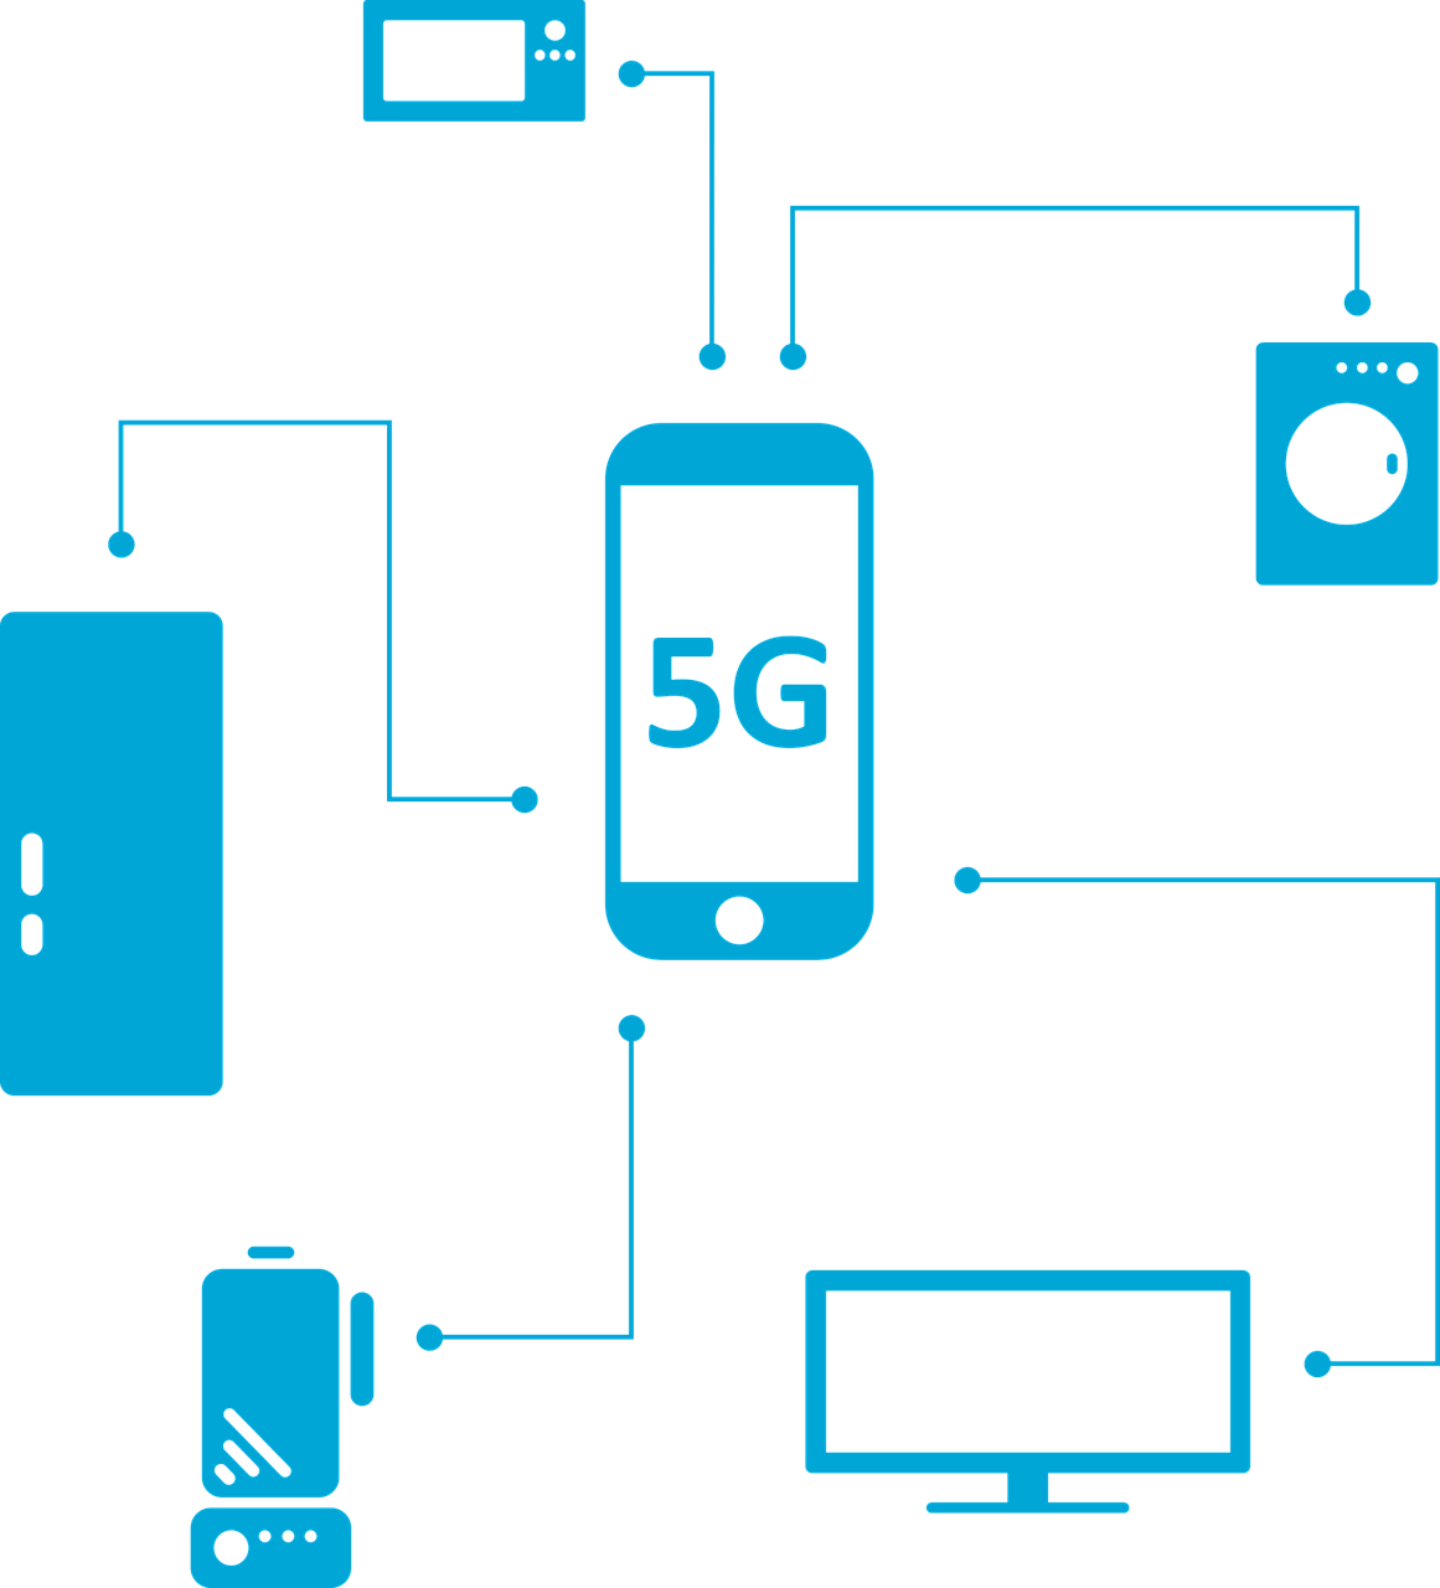 哪間電信的 5G 下載網速最快？國外調研機構公布台灣 2021 年 5G 行動網路報告